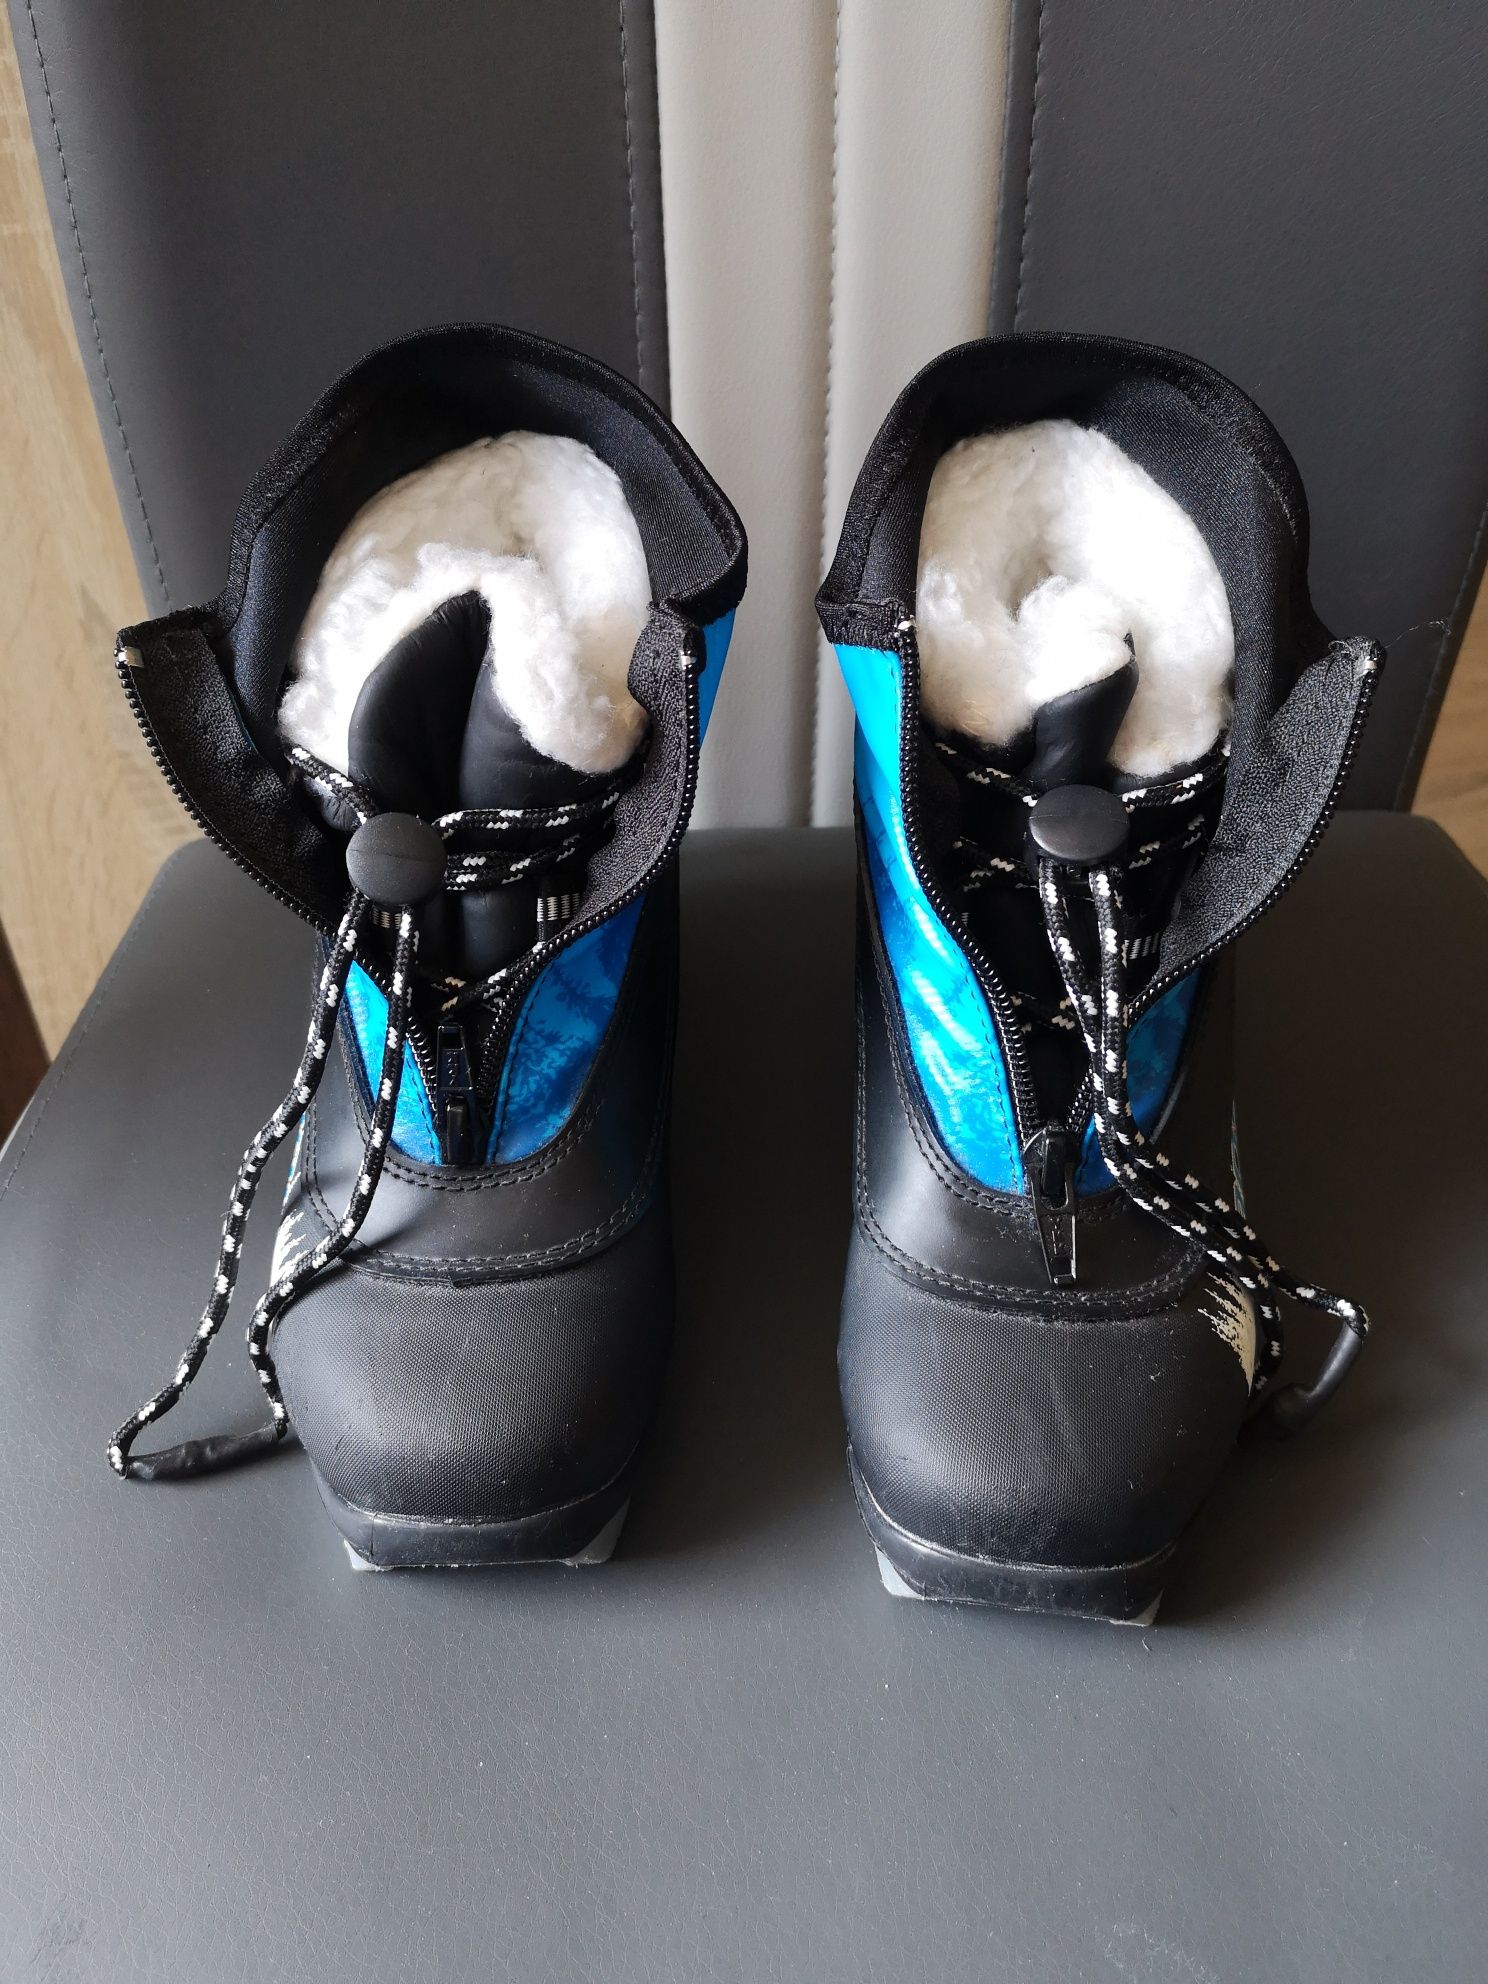 Buty do nart biegowych Rossignol Snow flake r. 30, w. 18,5 cm